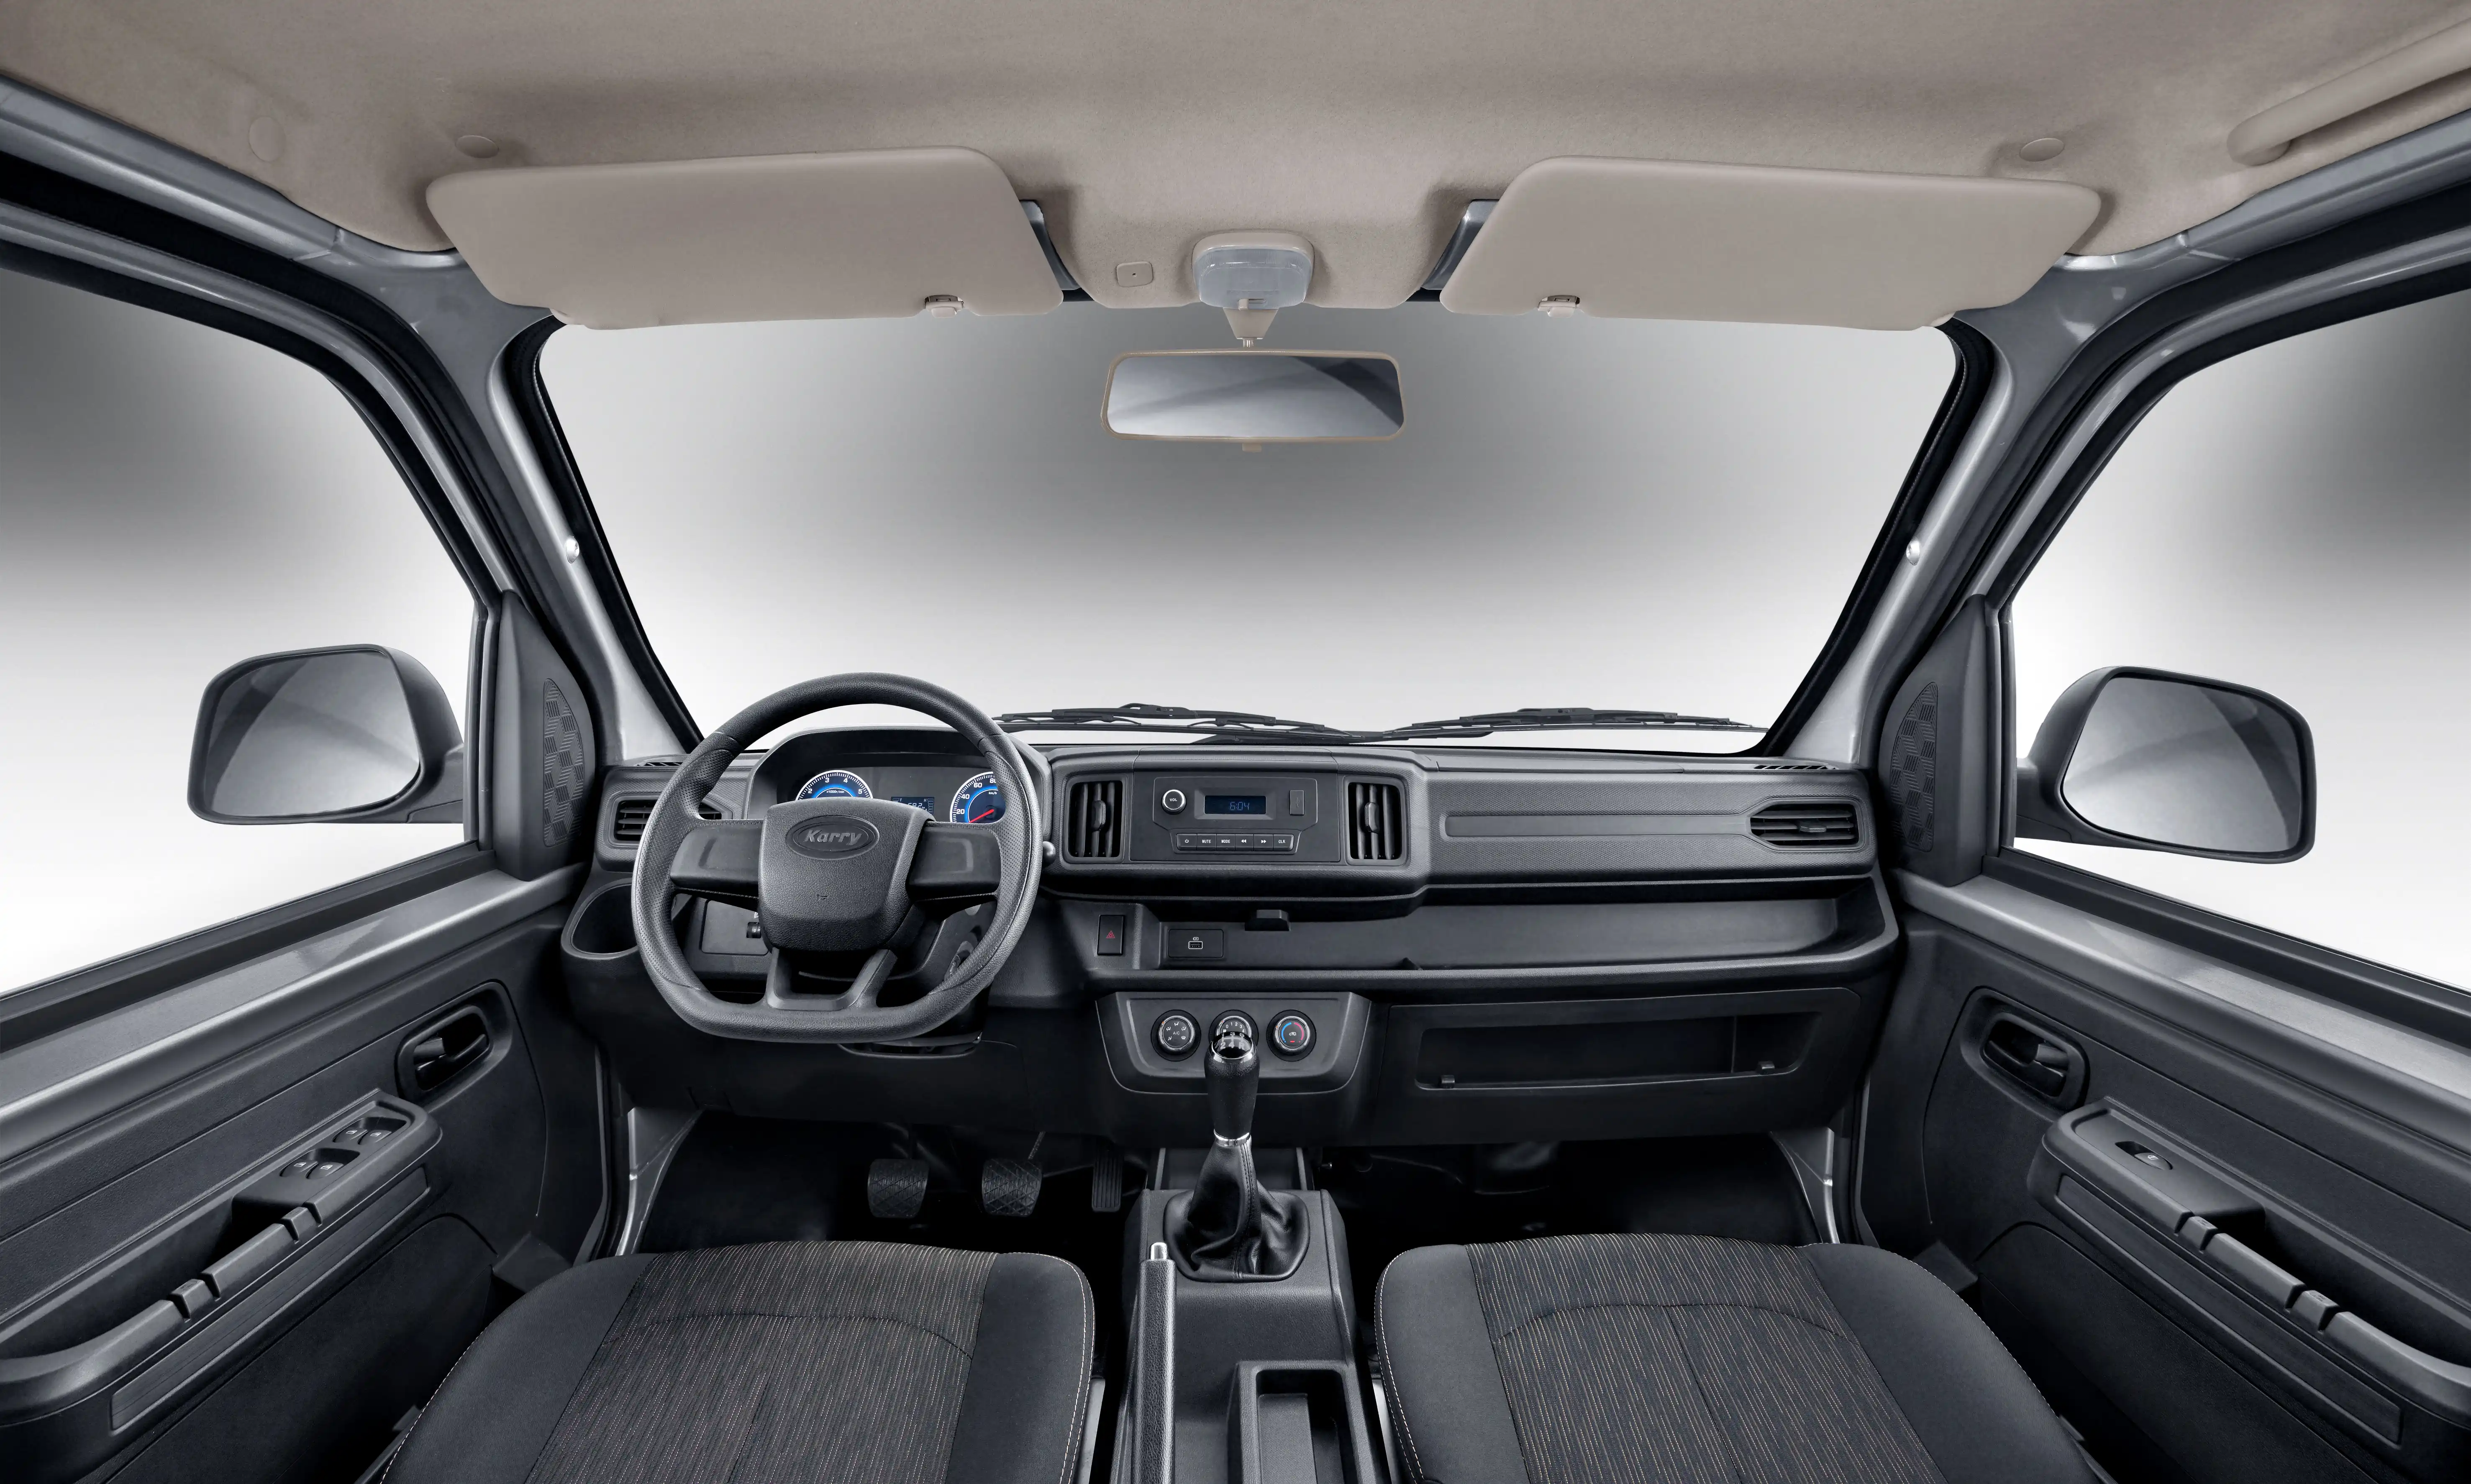 Vista del segundo interior del Karry Q52 Cabina Doble, destacando la capacidad y confort de los asientos traseros